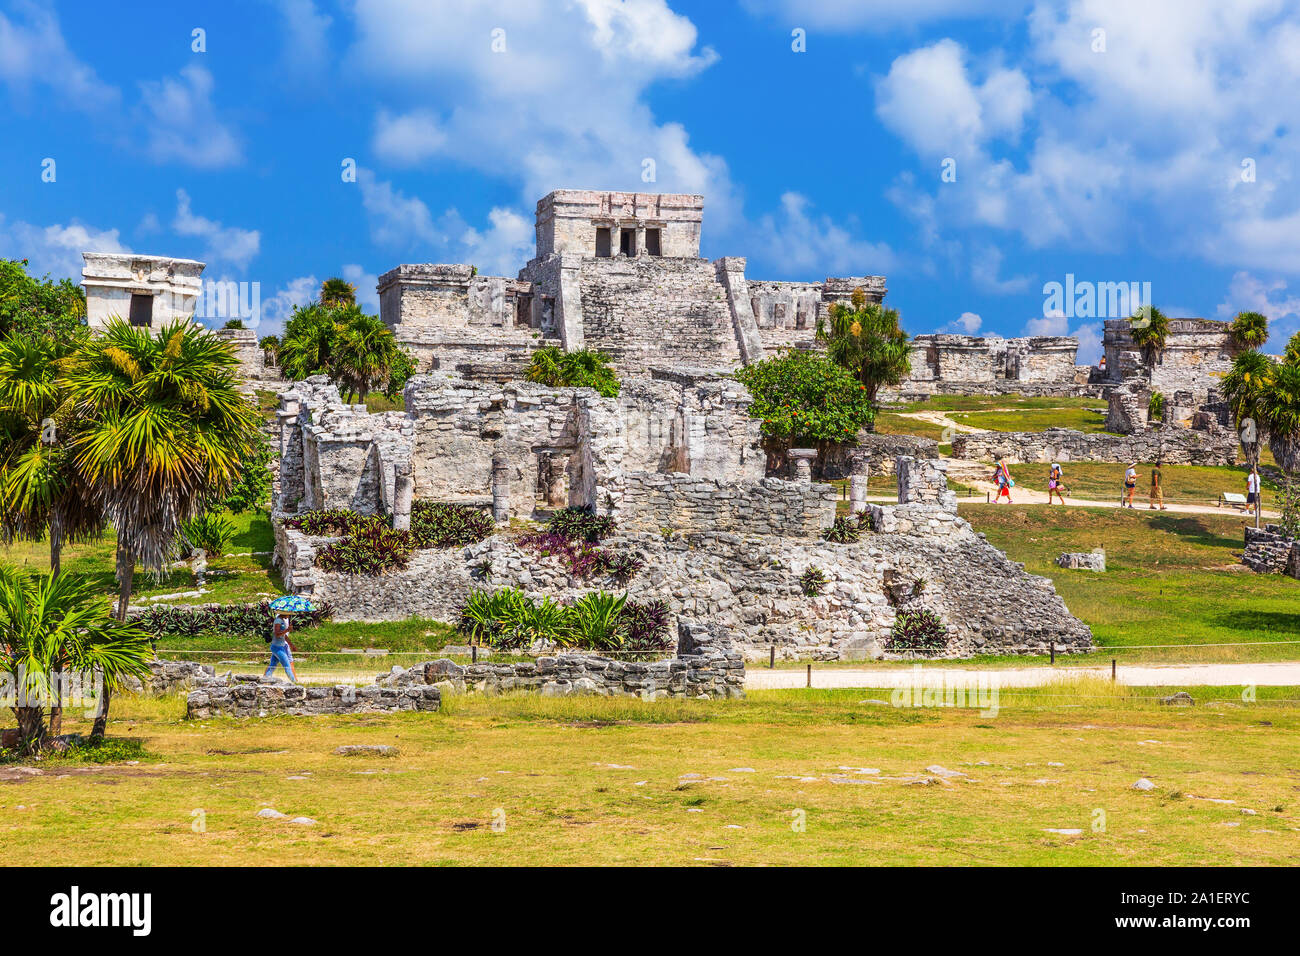 Tulum, Mexiko. El Castillo (Schloss) die Maya-Stadt Tulum Haupttempel. Stockfoto